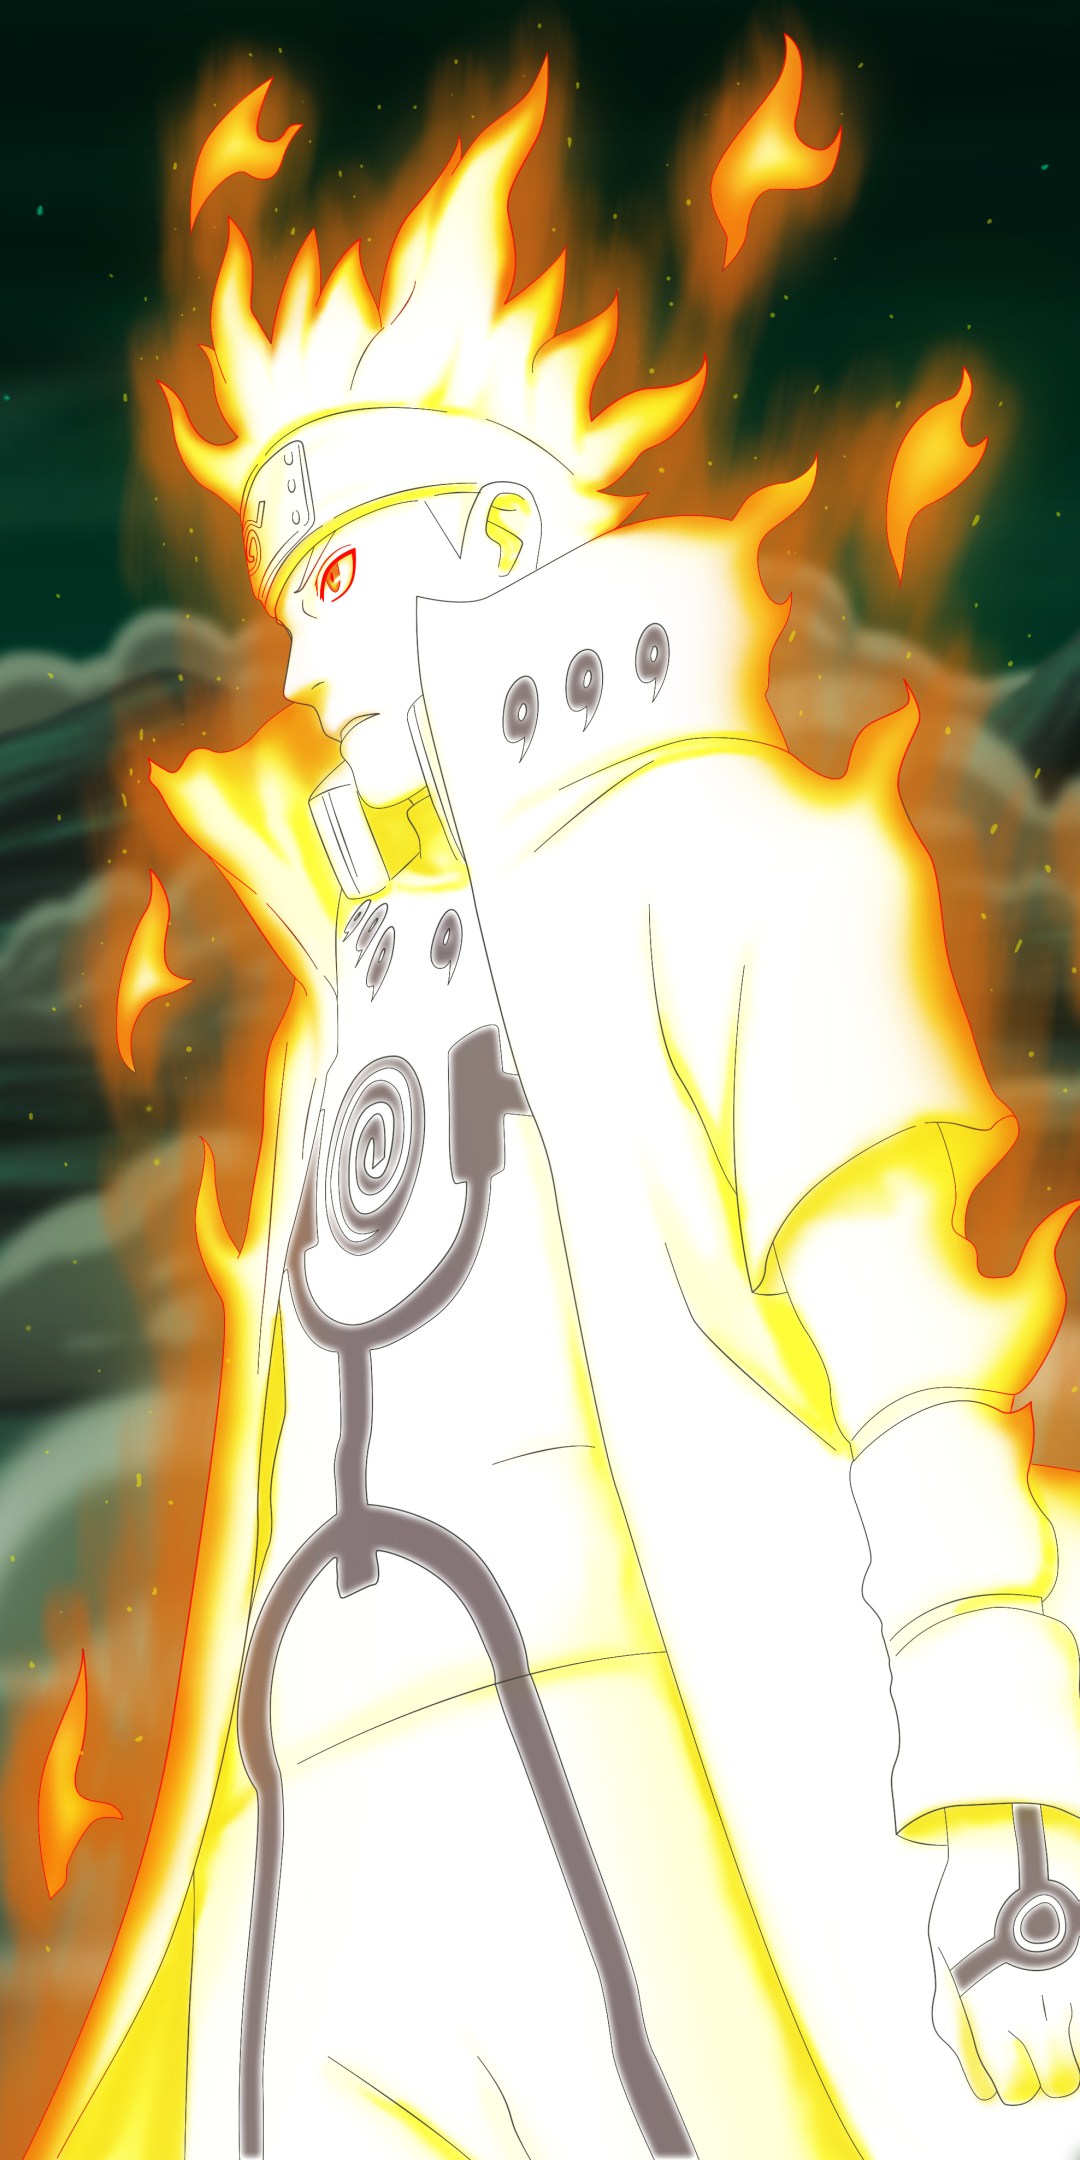 Tổng hợp hình nền Naruto cho điện thoại đẹp nhất full HD - Hà Nội Spirit Of Place 21